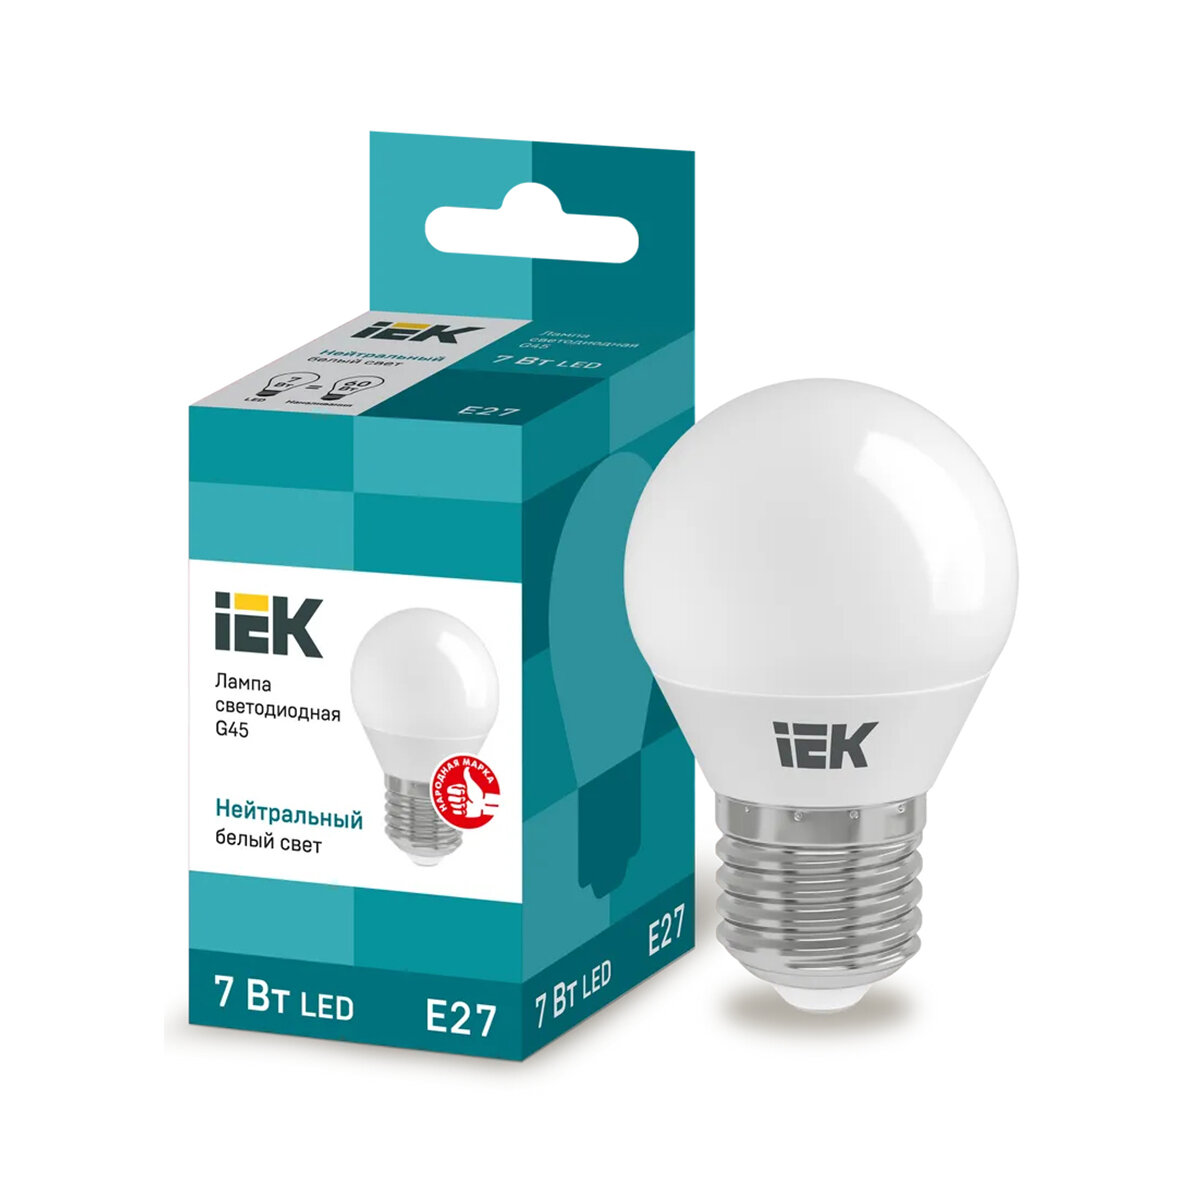 Лампа светодиодная LED IEK Шар, E27, G45, 7 Вт, 4000 K, нейтральный свет